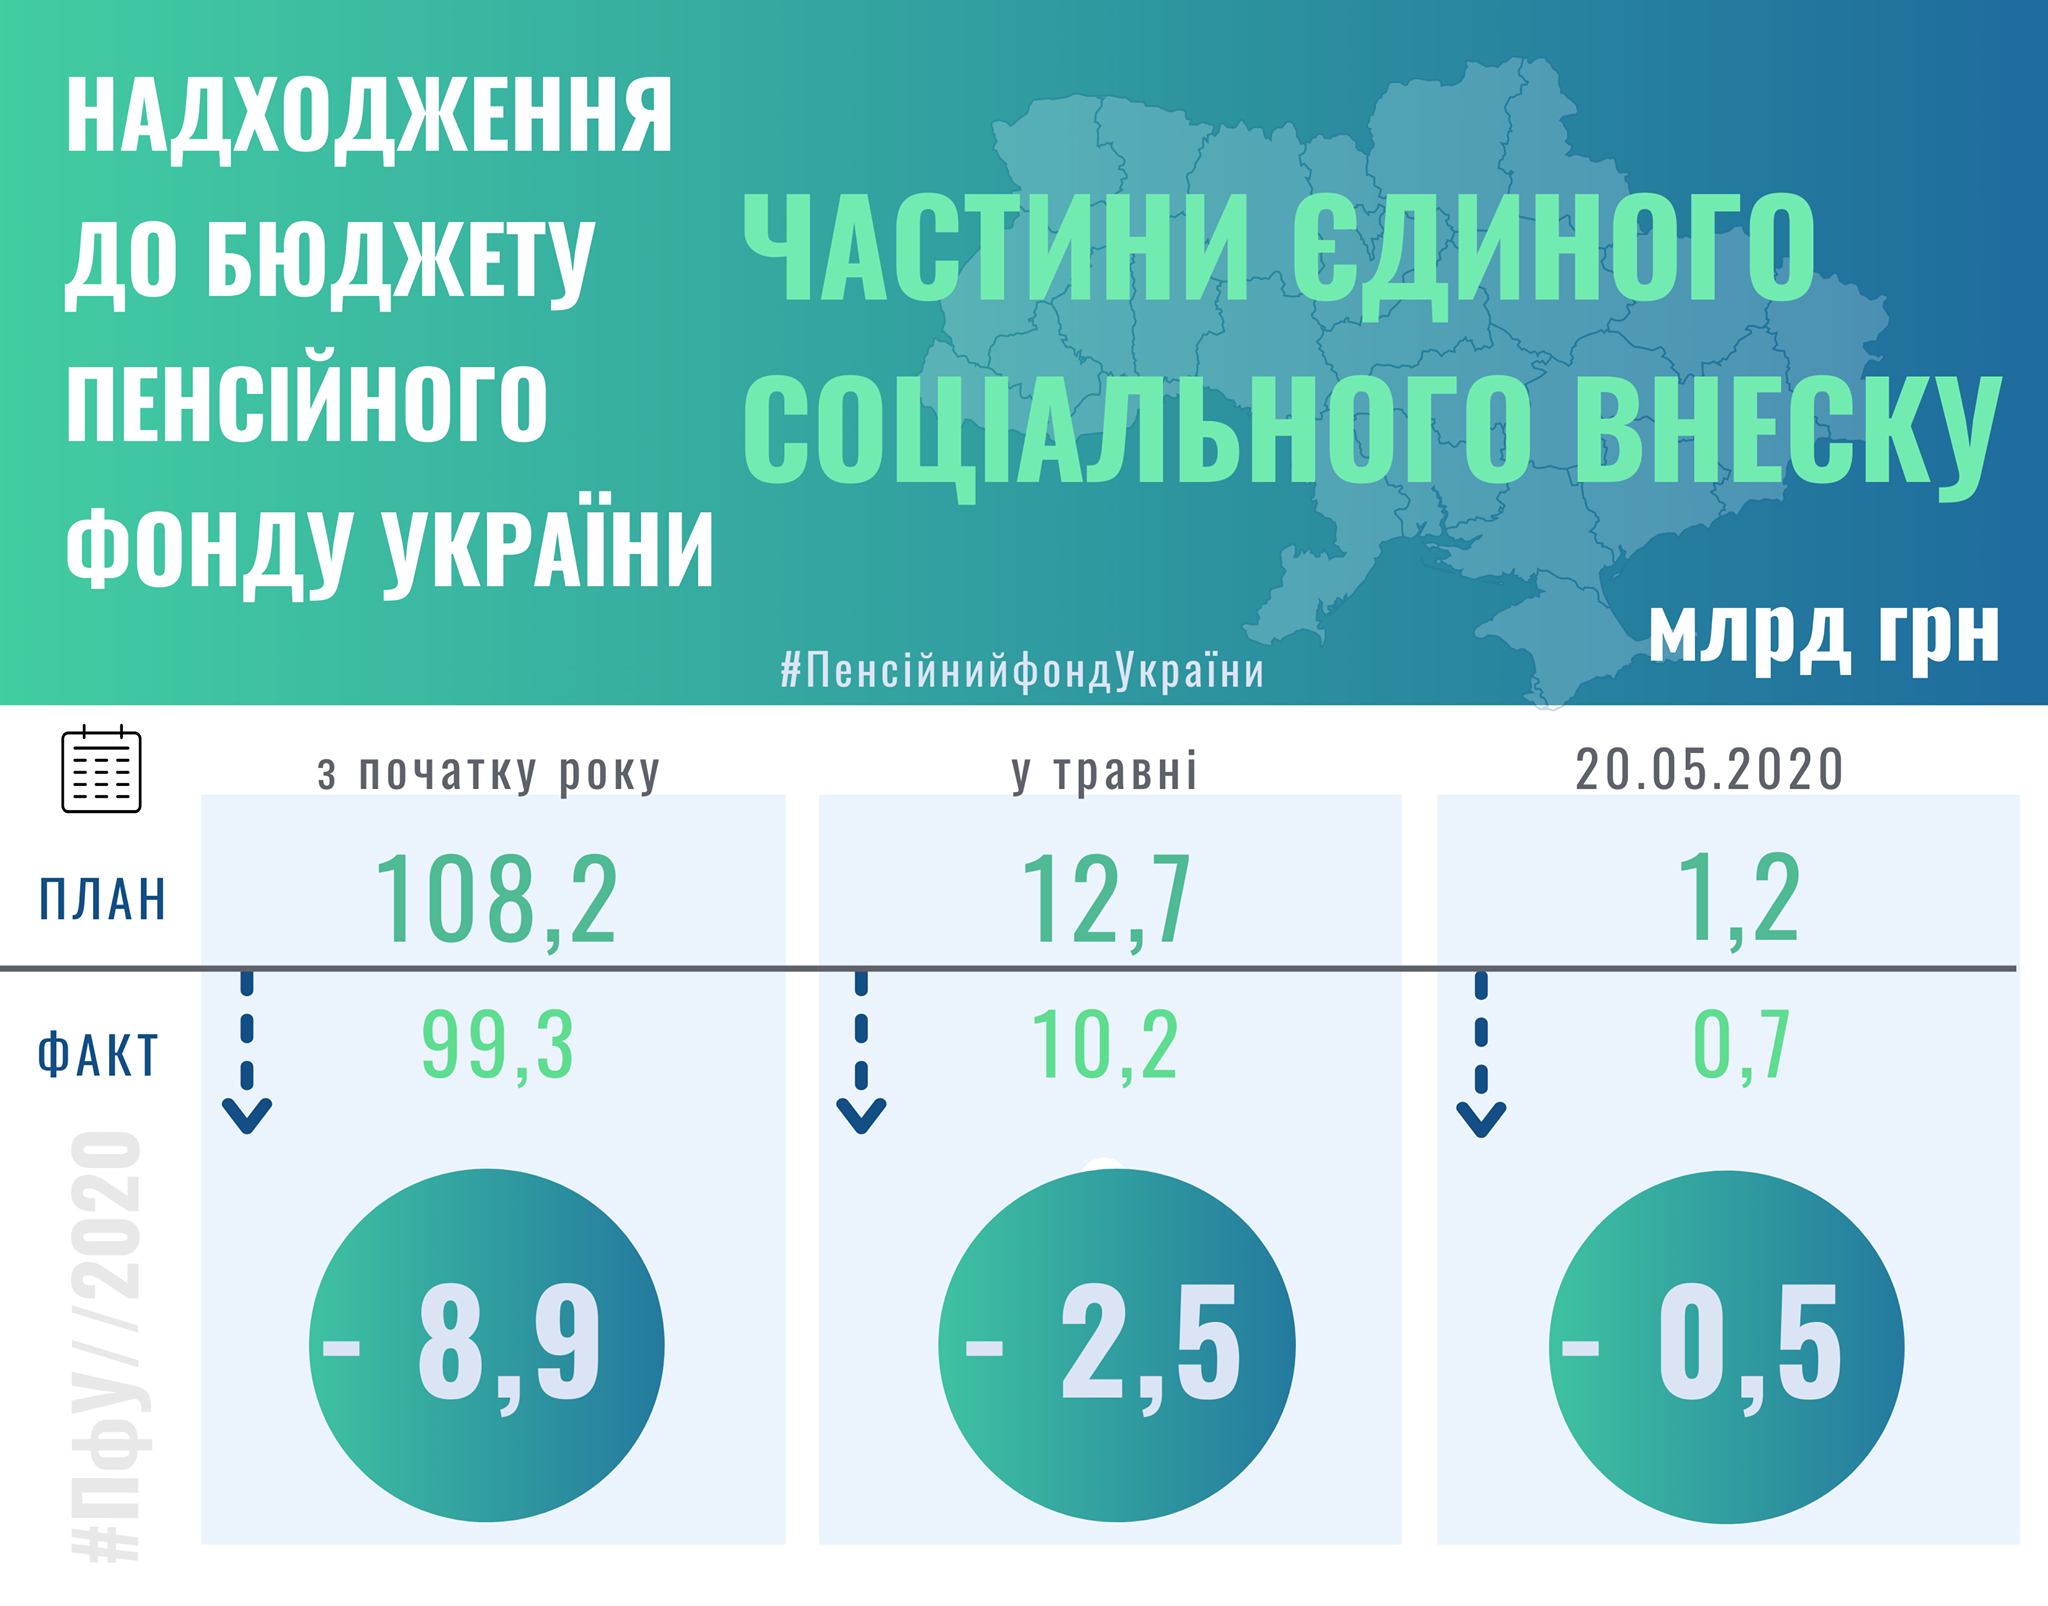 Доходы Пенсионного фонда Украины резко упали во время карантина